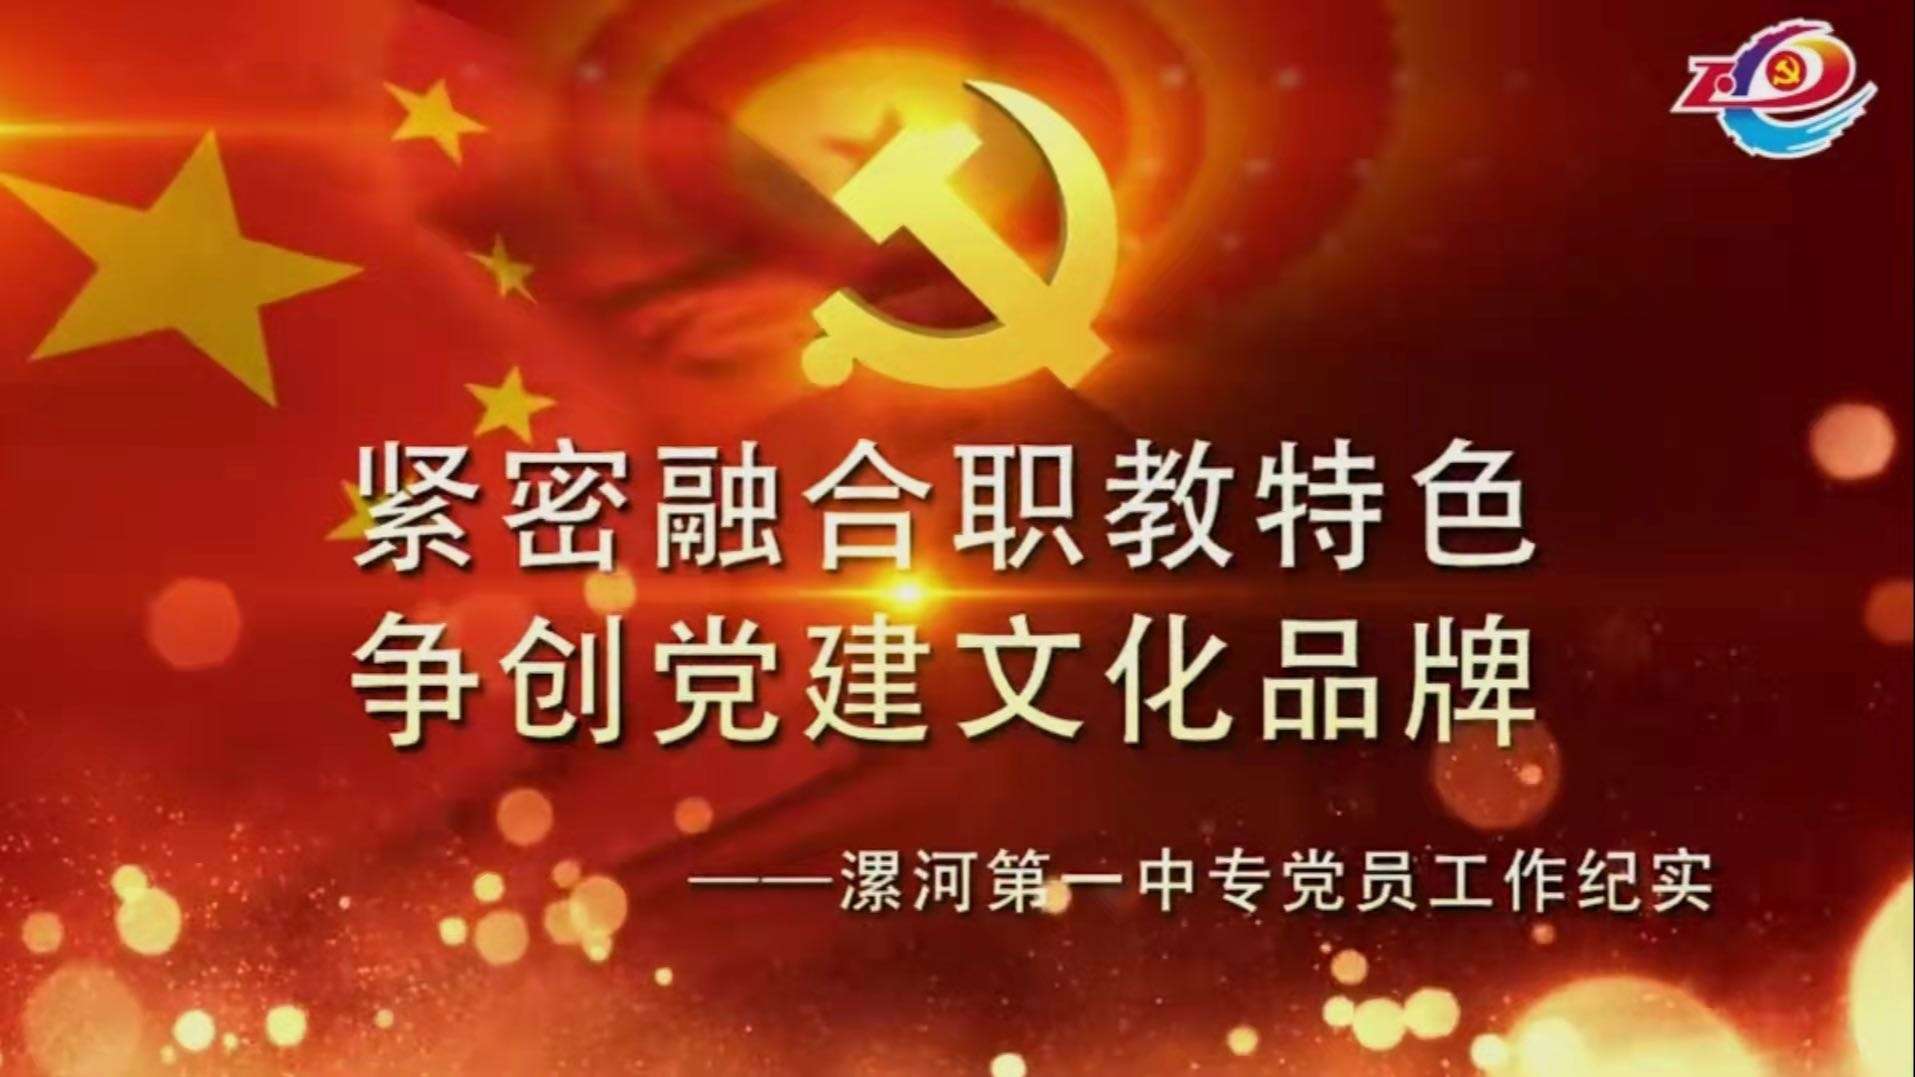 中国成立七十周年党建宣传片-紧密融合职教特色 争创党建文化品牌